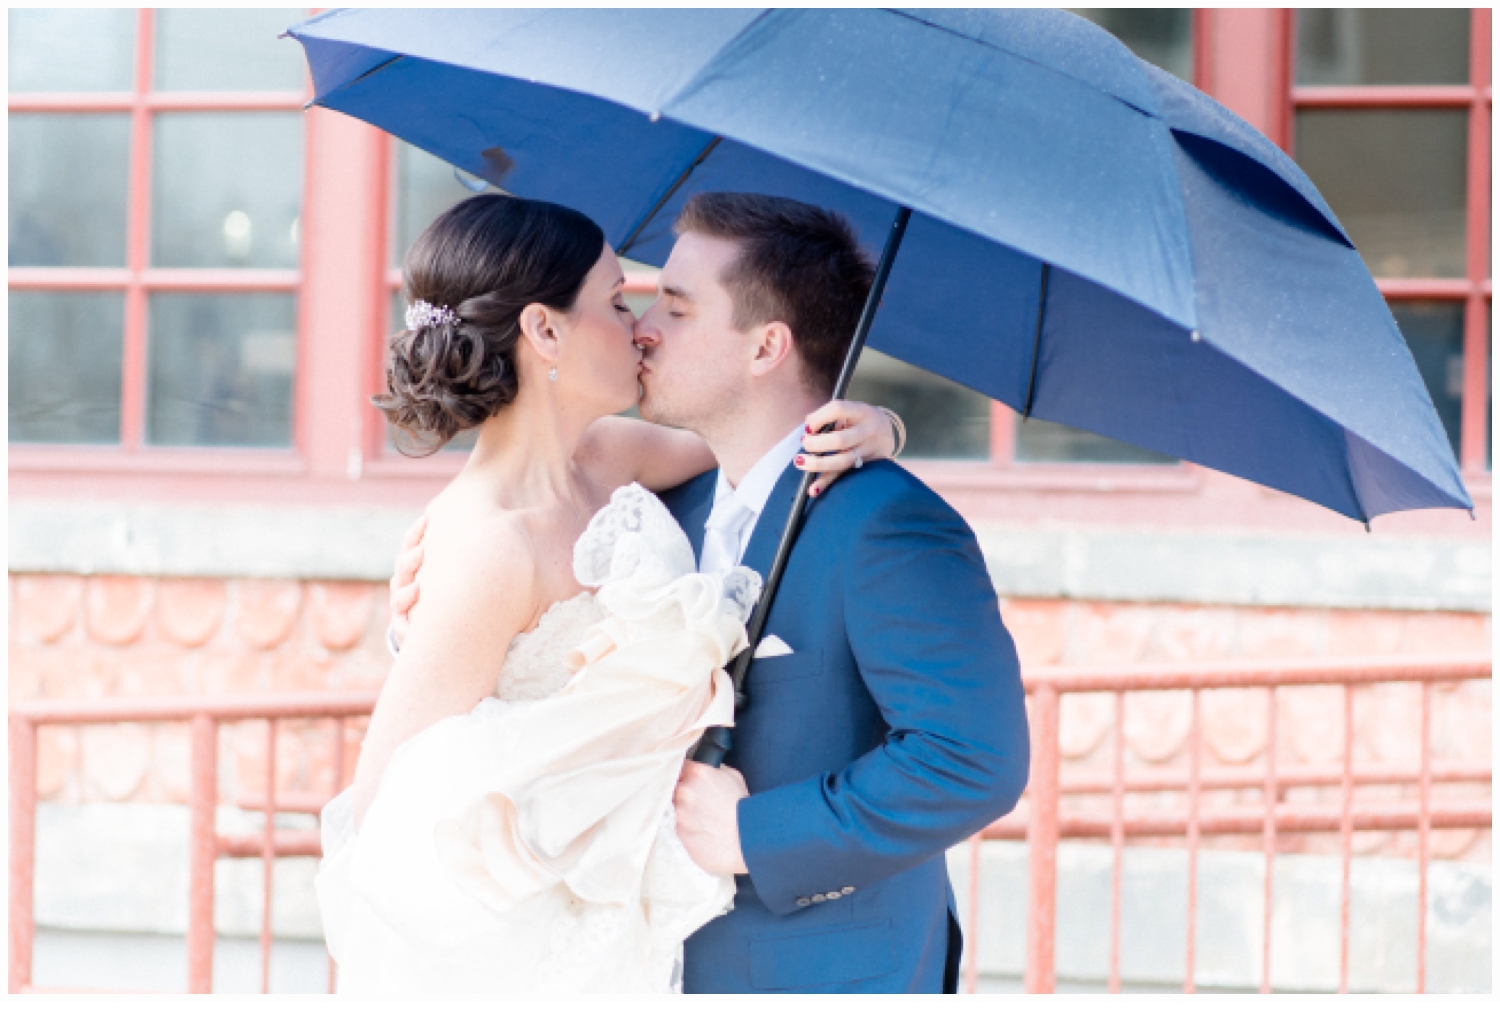 brida and groom kissing under umbrella